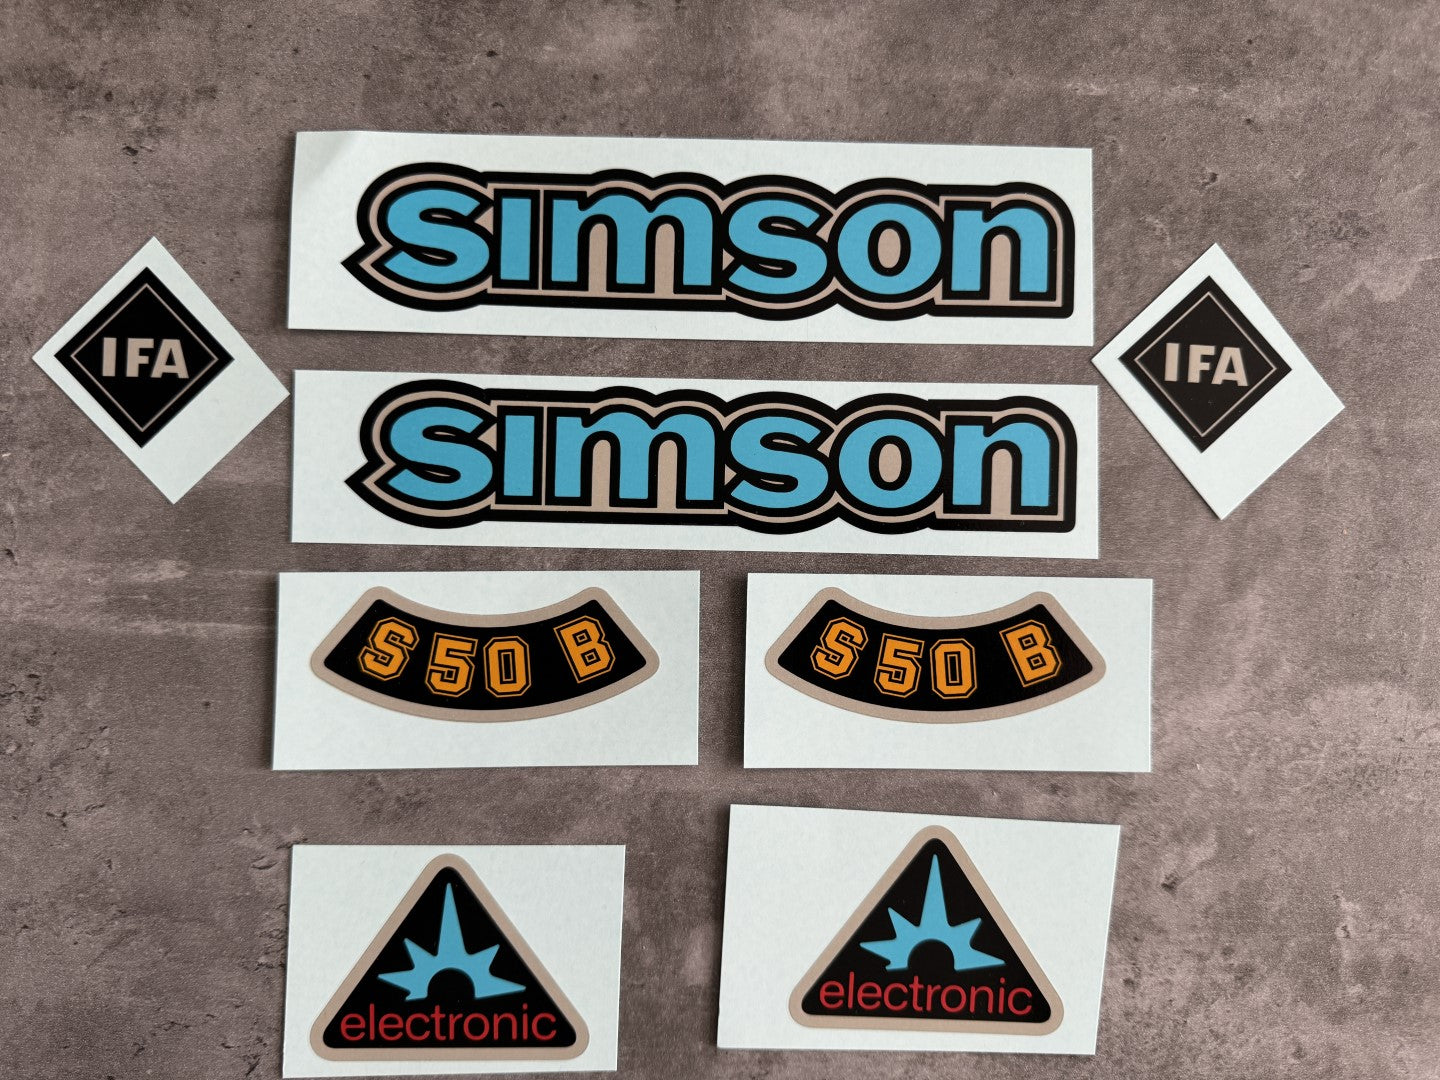 Simson S50 IFA B electronic Blau Wasserschiebebilder Abziehbilder Silber